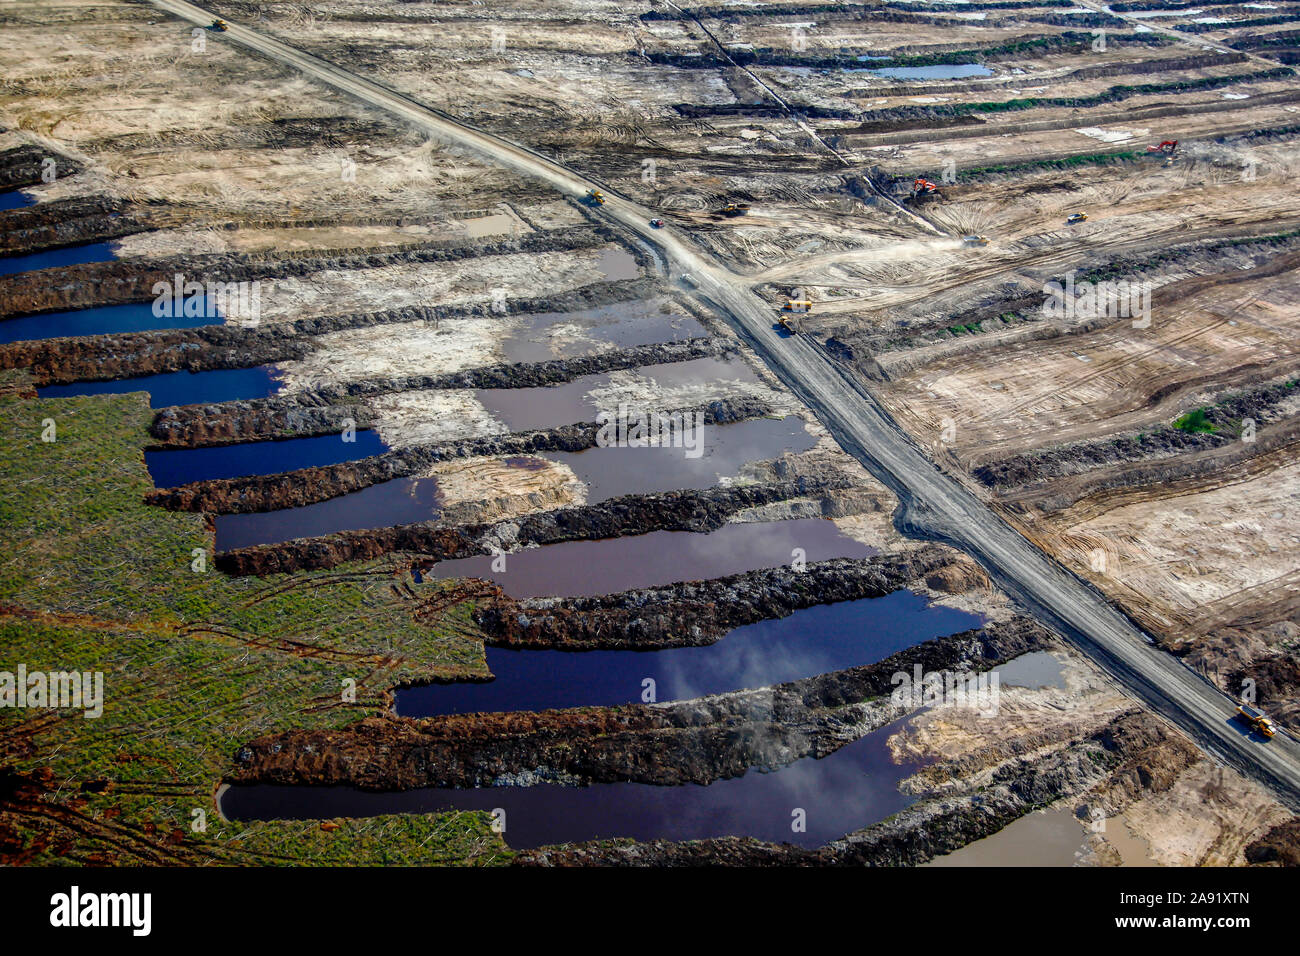 Ausgrabungen von Öl Sand an einem der Öl sand Gruben in Fort McMurray in Alberta, Kanada. Die Athabasca Oil Sands Kaution gehört zu den größten in der Welt. Die Bitumen, auch allgemein namens tar (tar sands), enthält viele Kohlenwasserstoffe, sondern ist notorisch schwer zu extrahieren. Auf 100 BTU von Energie gewonnen, 70 BTU ist in den Prozess verloren. Allein im Jahr 2011, der Ölsand in Kanada produziert 55 Millionen Tonnen "Treibhausgasemissionen". Die acht Prozent der gesamten Emissionen Kanadas. Stockfoto